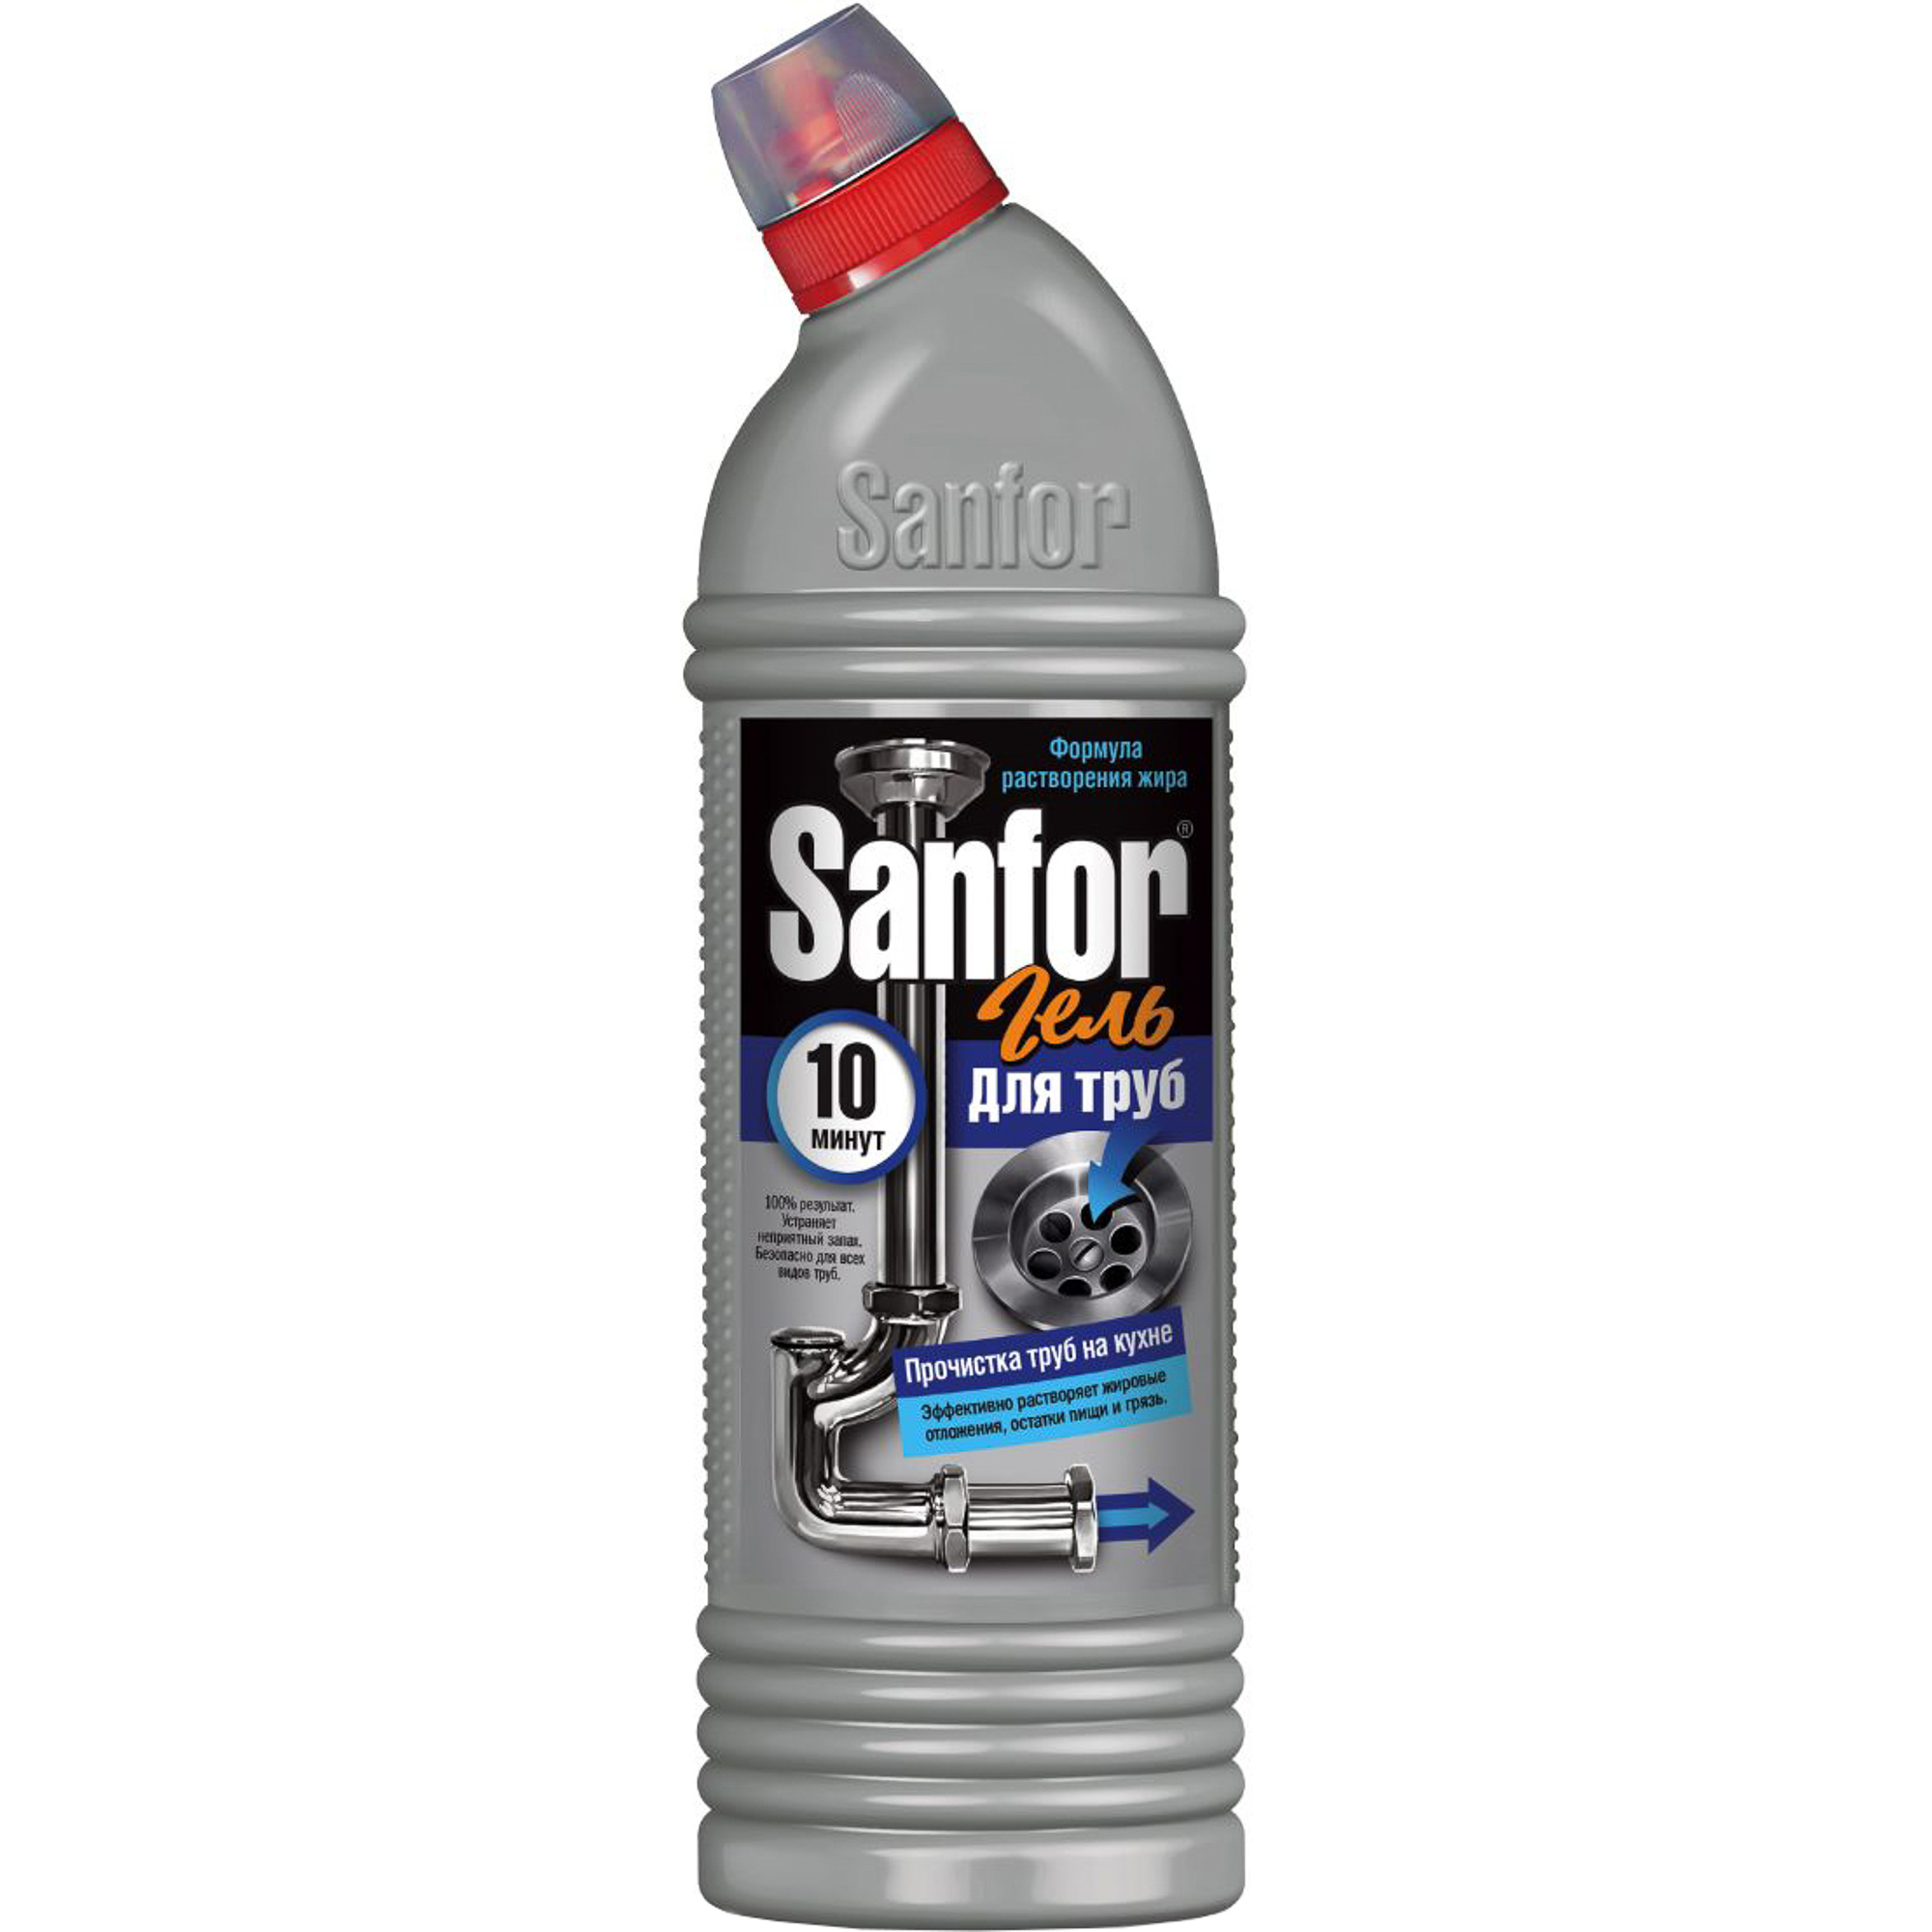 Средство Sanfor Прочистка труб на кухне 10 минут 750 мл средство для уборки туалета sanfor